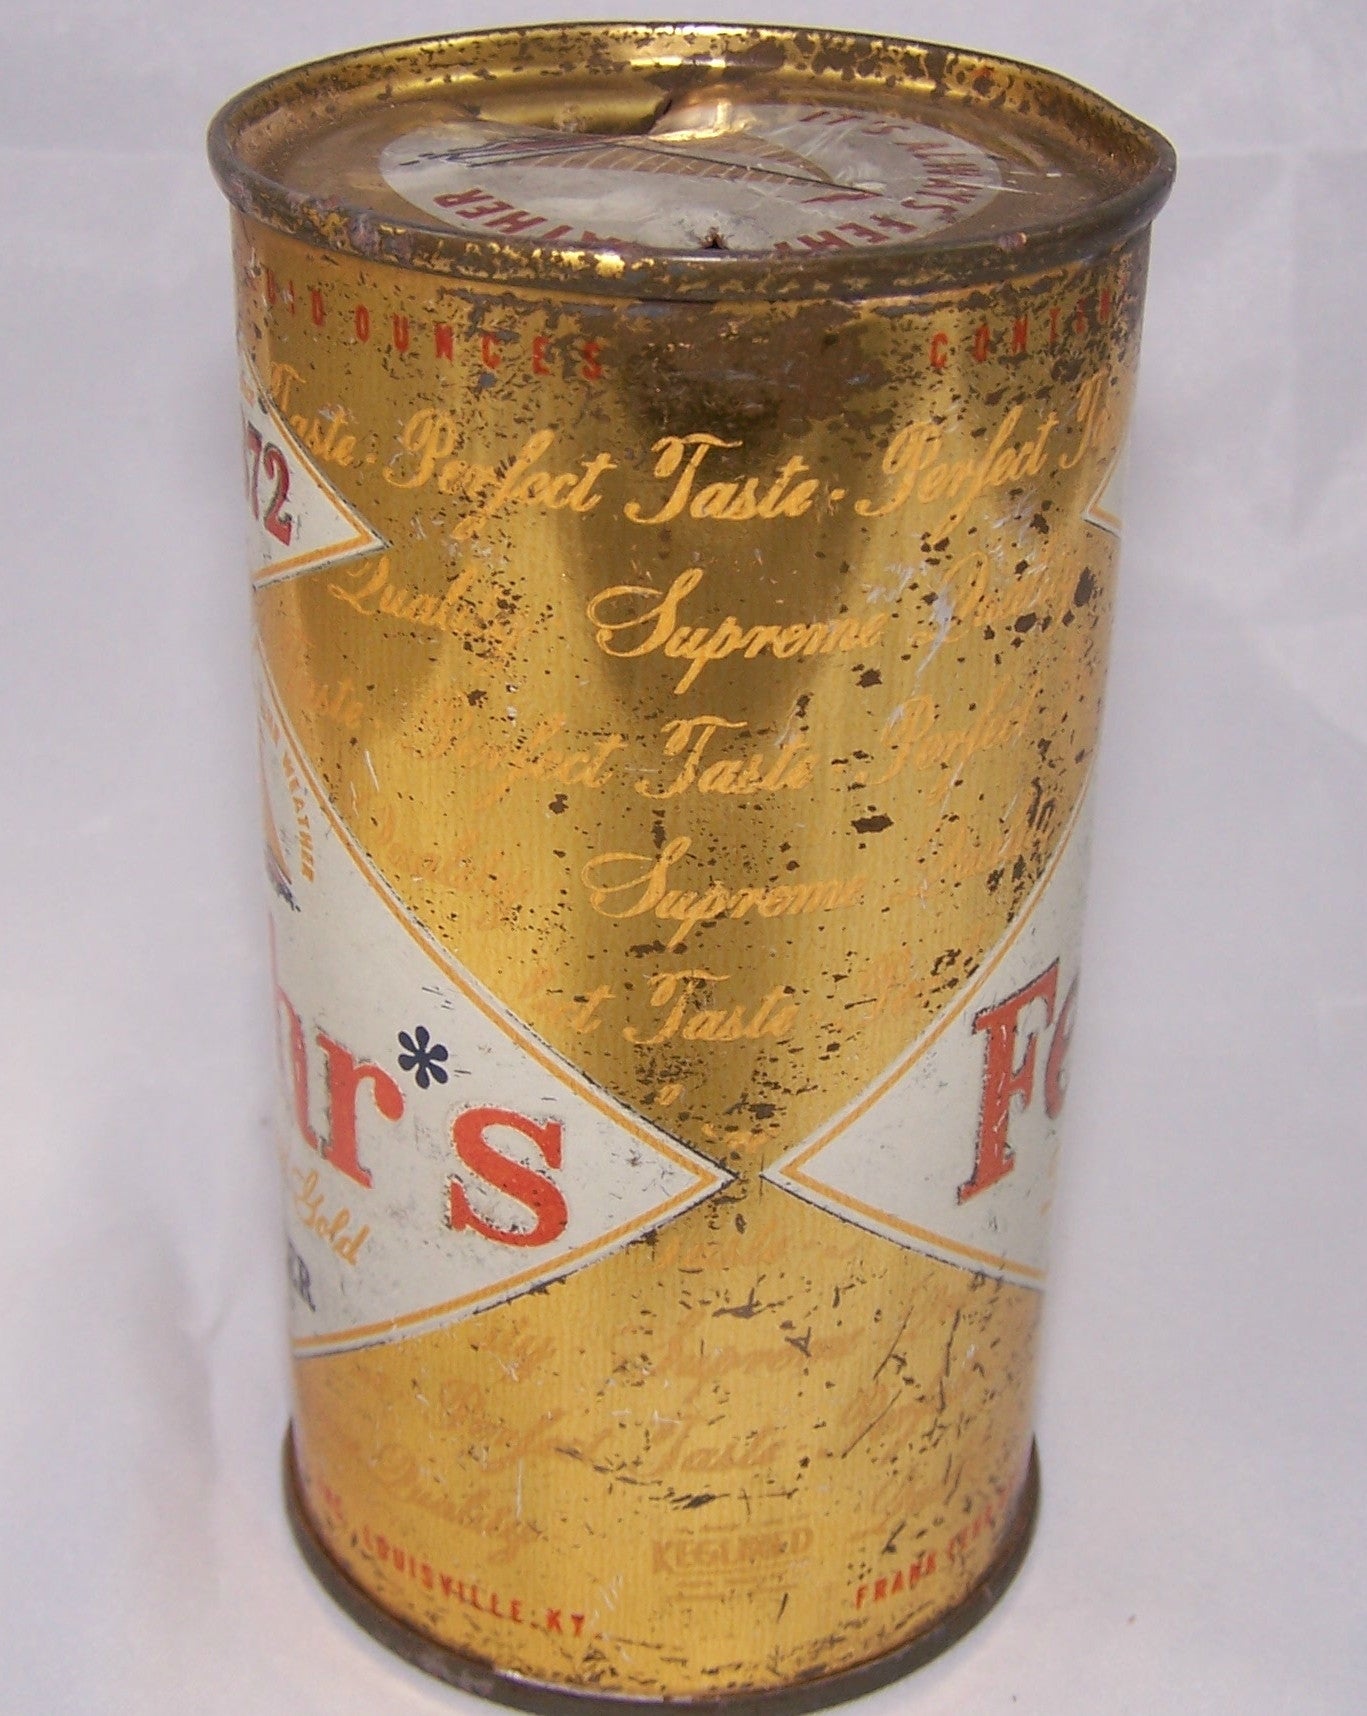 Fehr's Liquid Gold Beer, USBC 62-31, Grade 2  Sold on 8/1/16